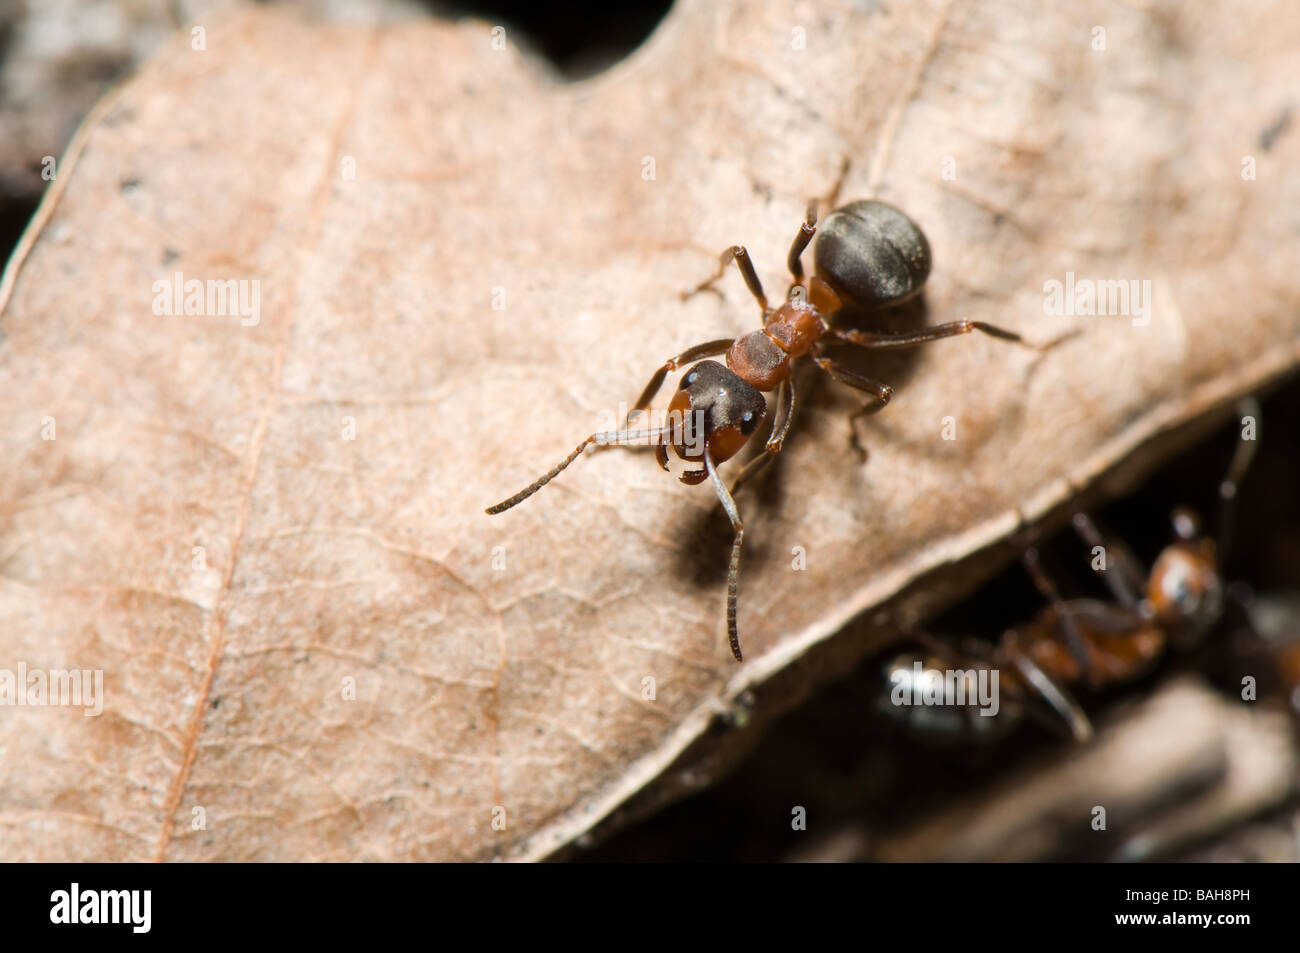 Madera roja hormiga hormiga (Formica, Formica Polyctena) Foto de stock